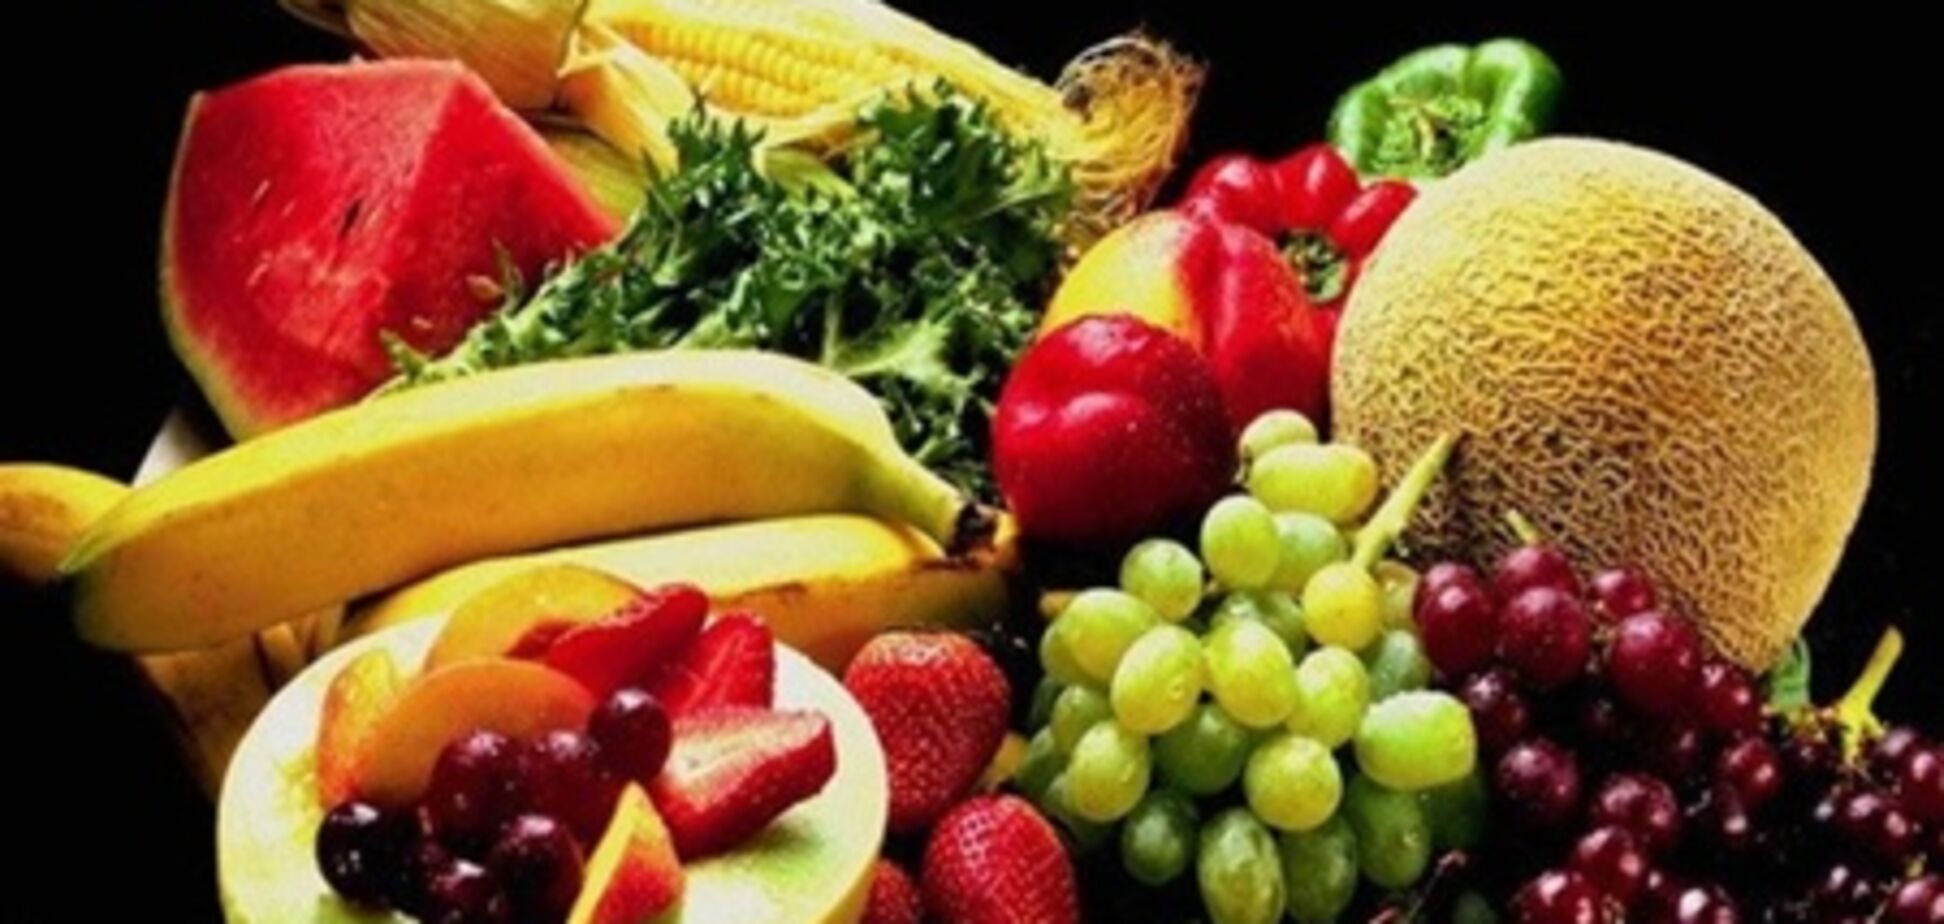 Цены на овощи стабильные, а фрукты начинают дорожать